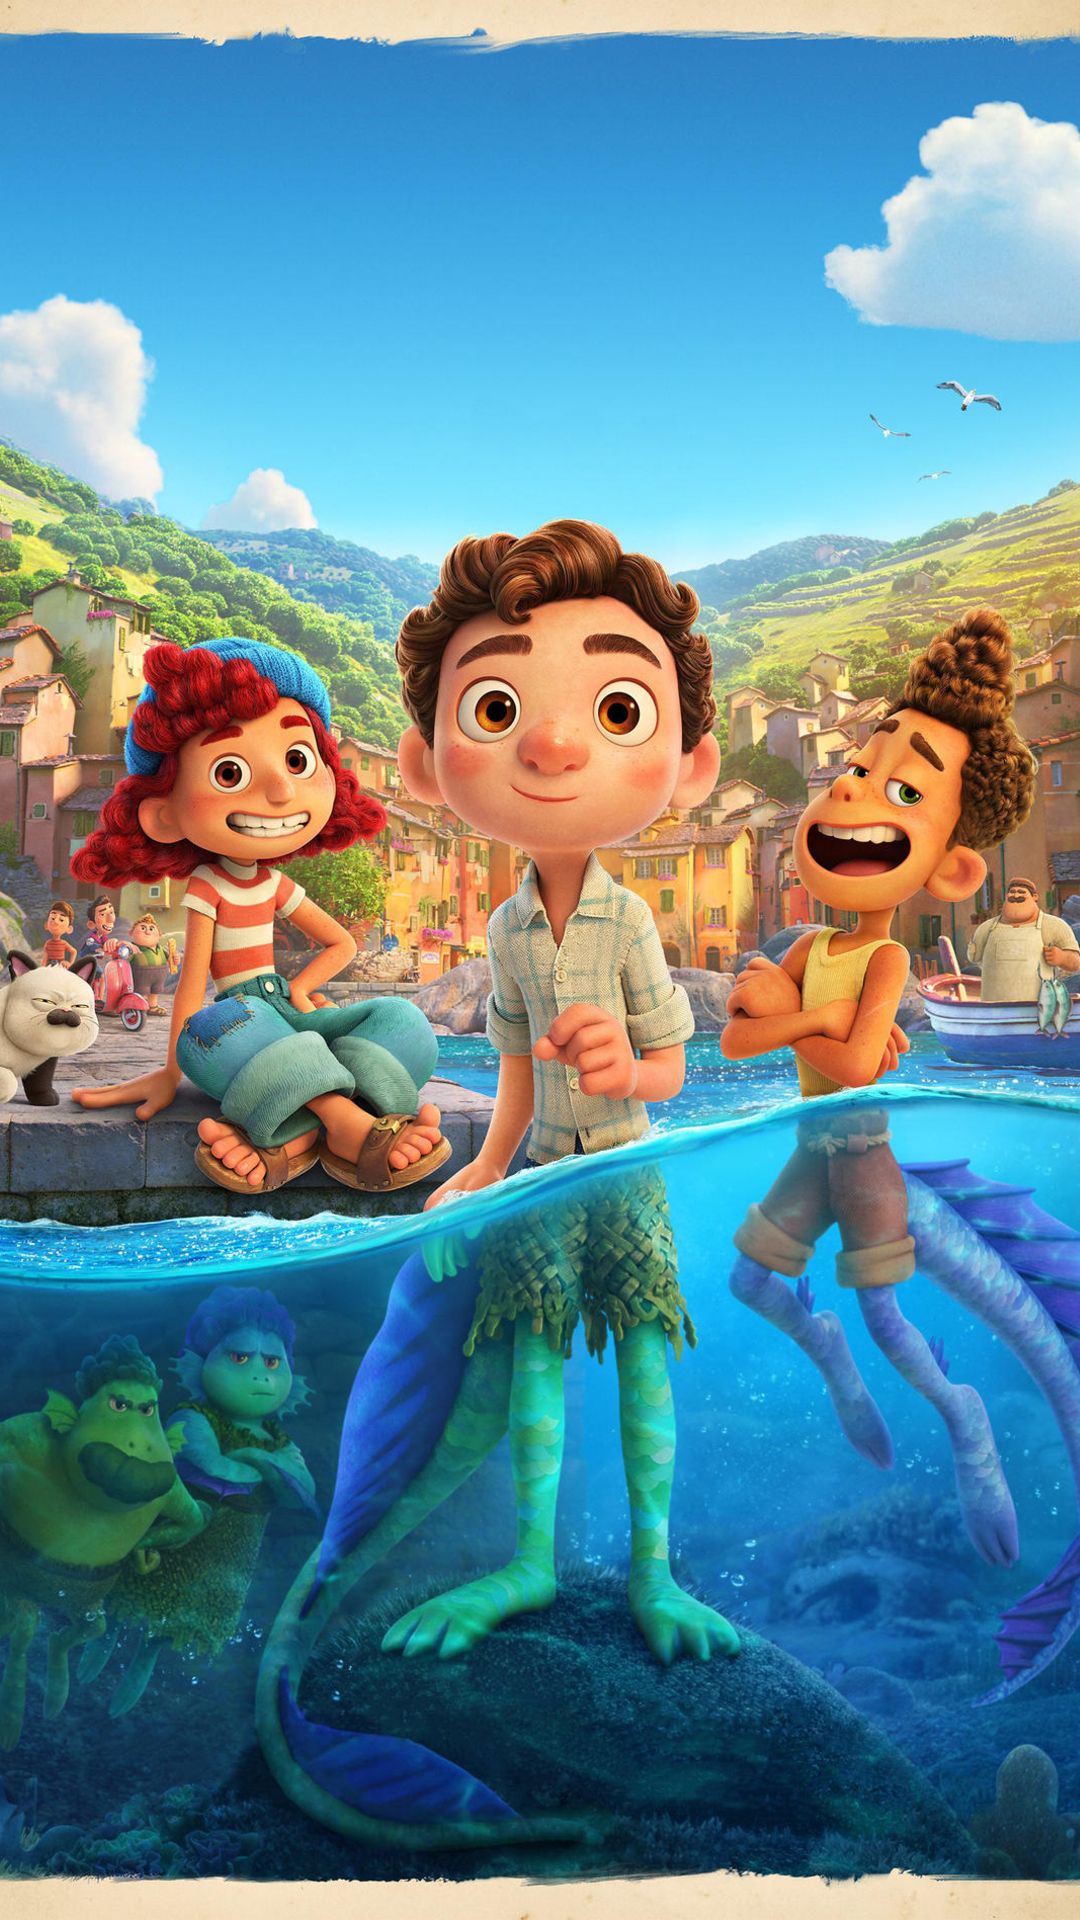 Luca Pixar Wallpapers - Top 25 Best Luca Disney Pixar Backgrounds Download